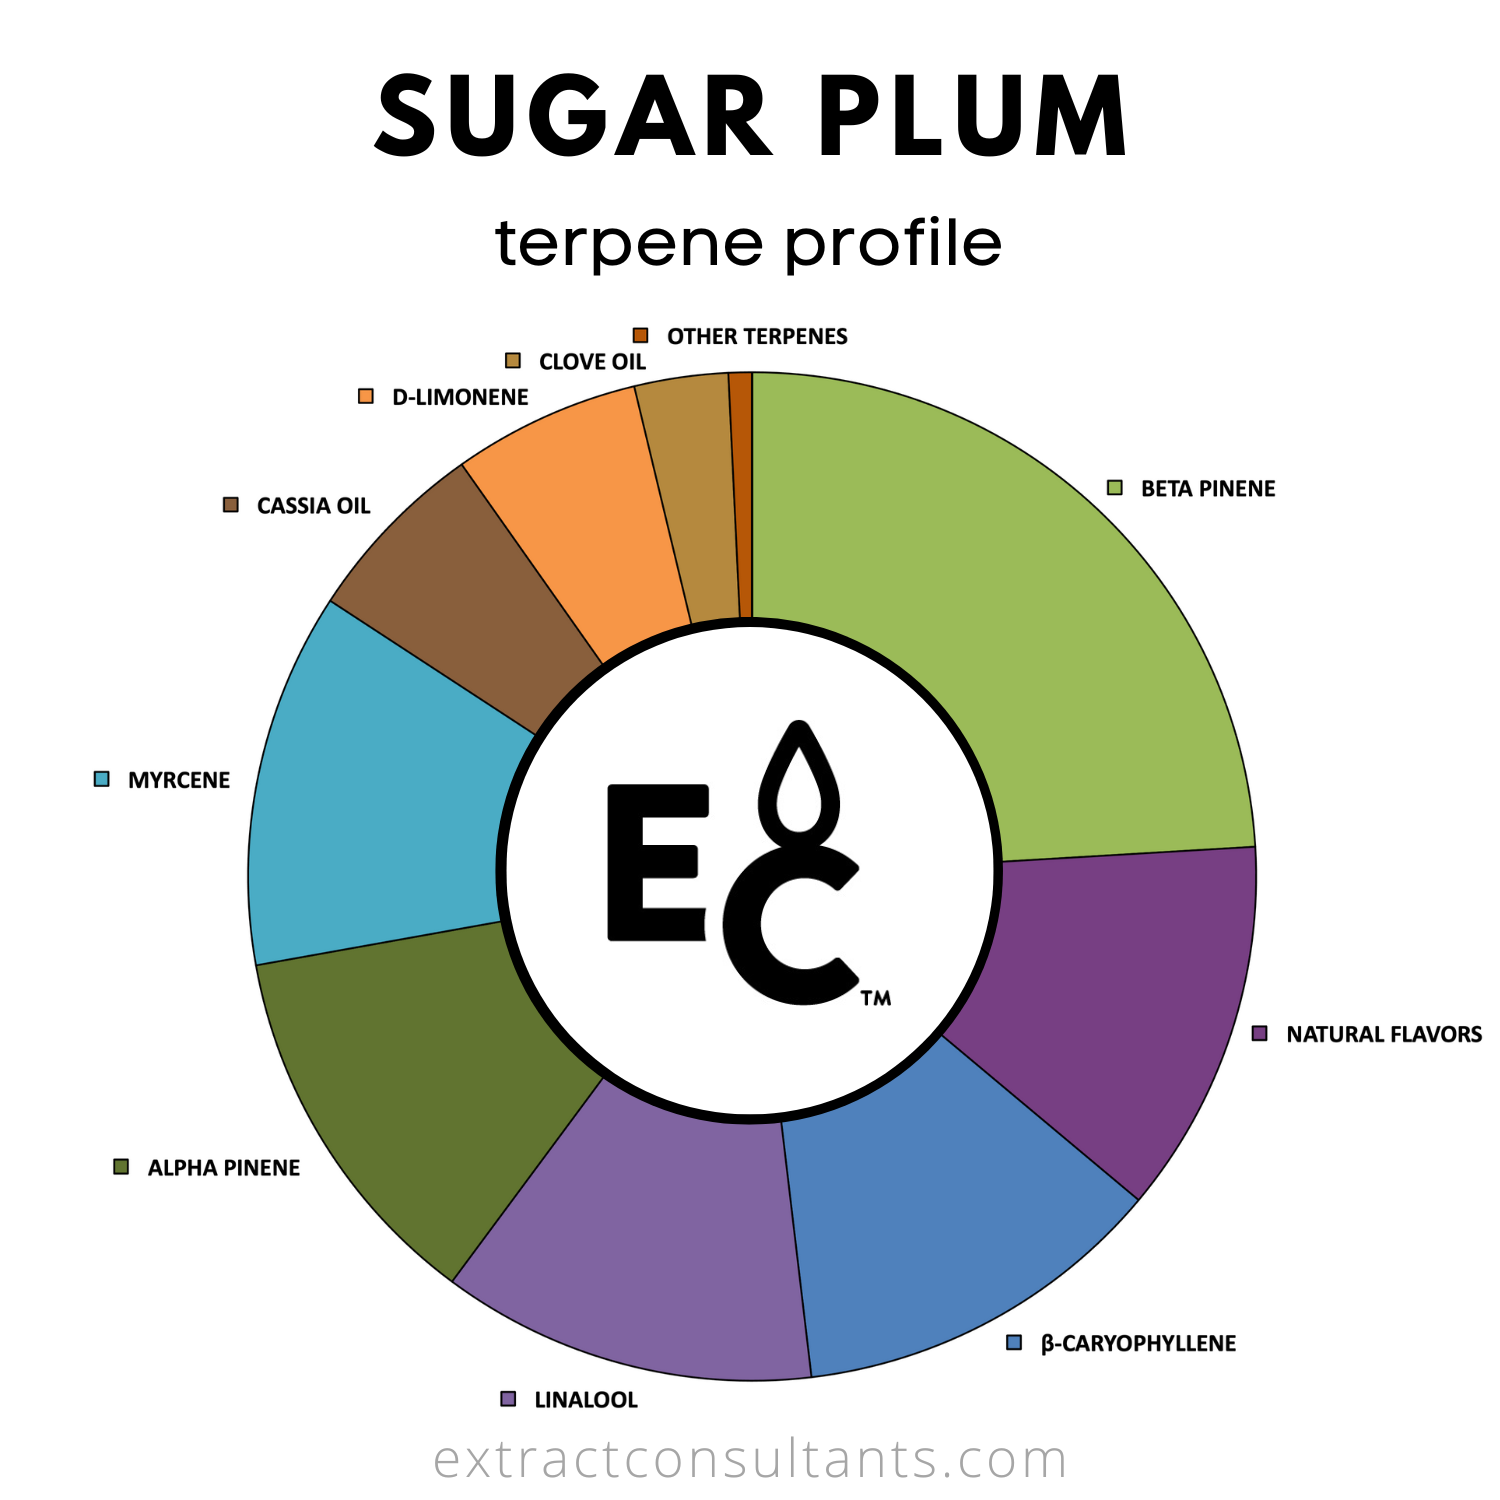 Sugar Plum Solvent Free Terpene Flavor